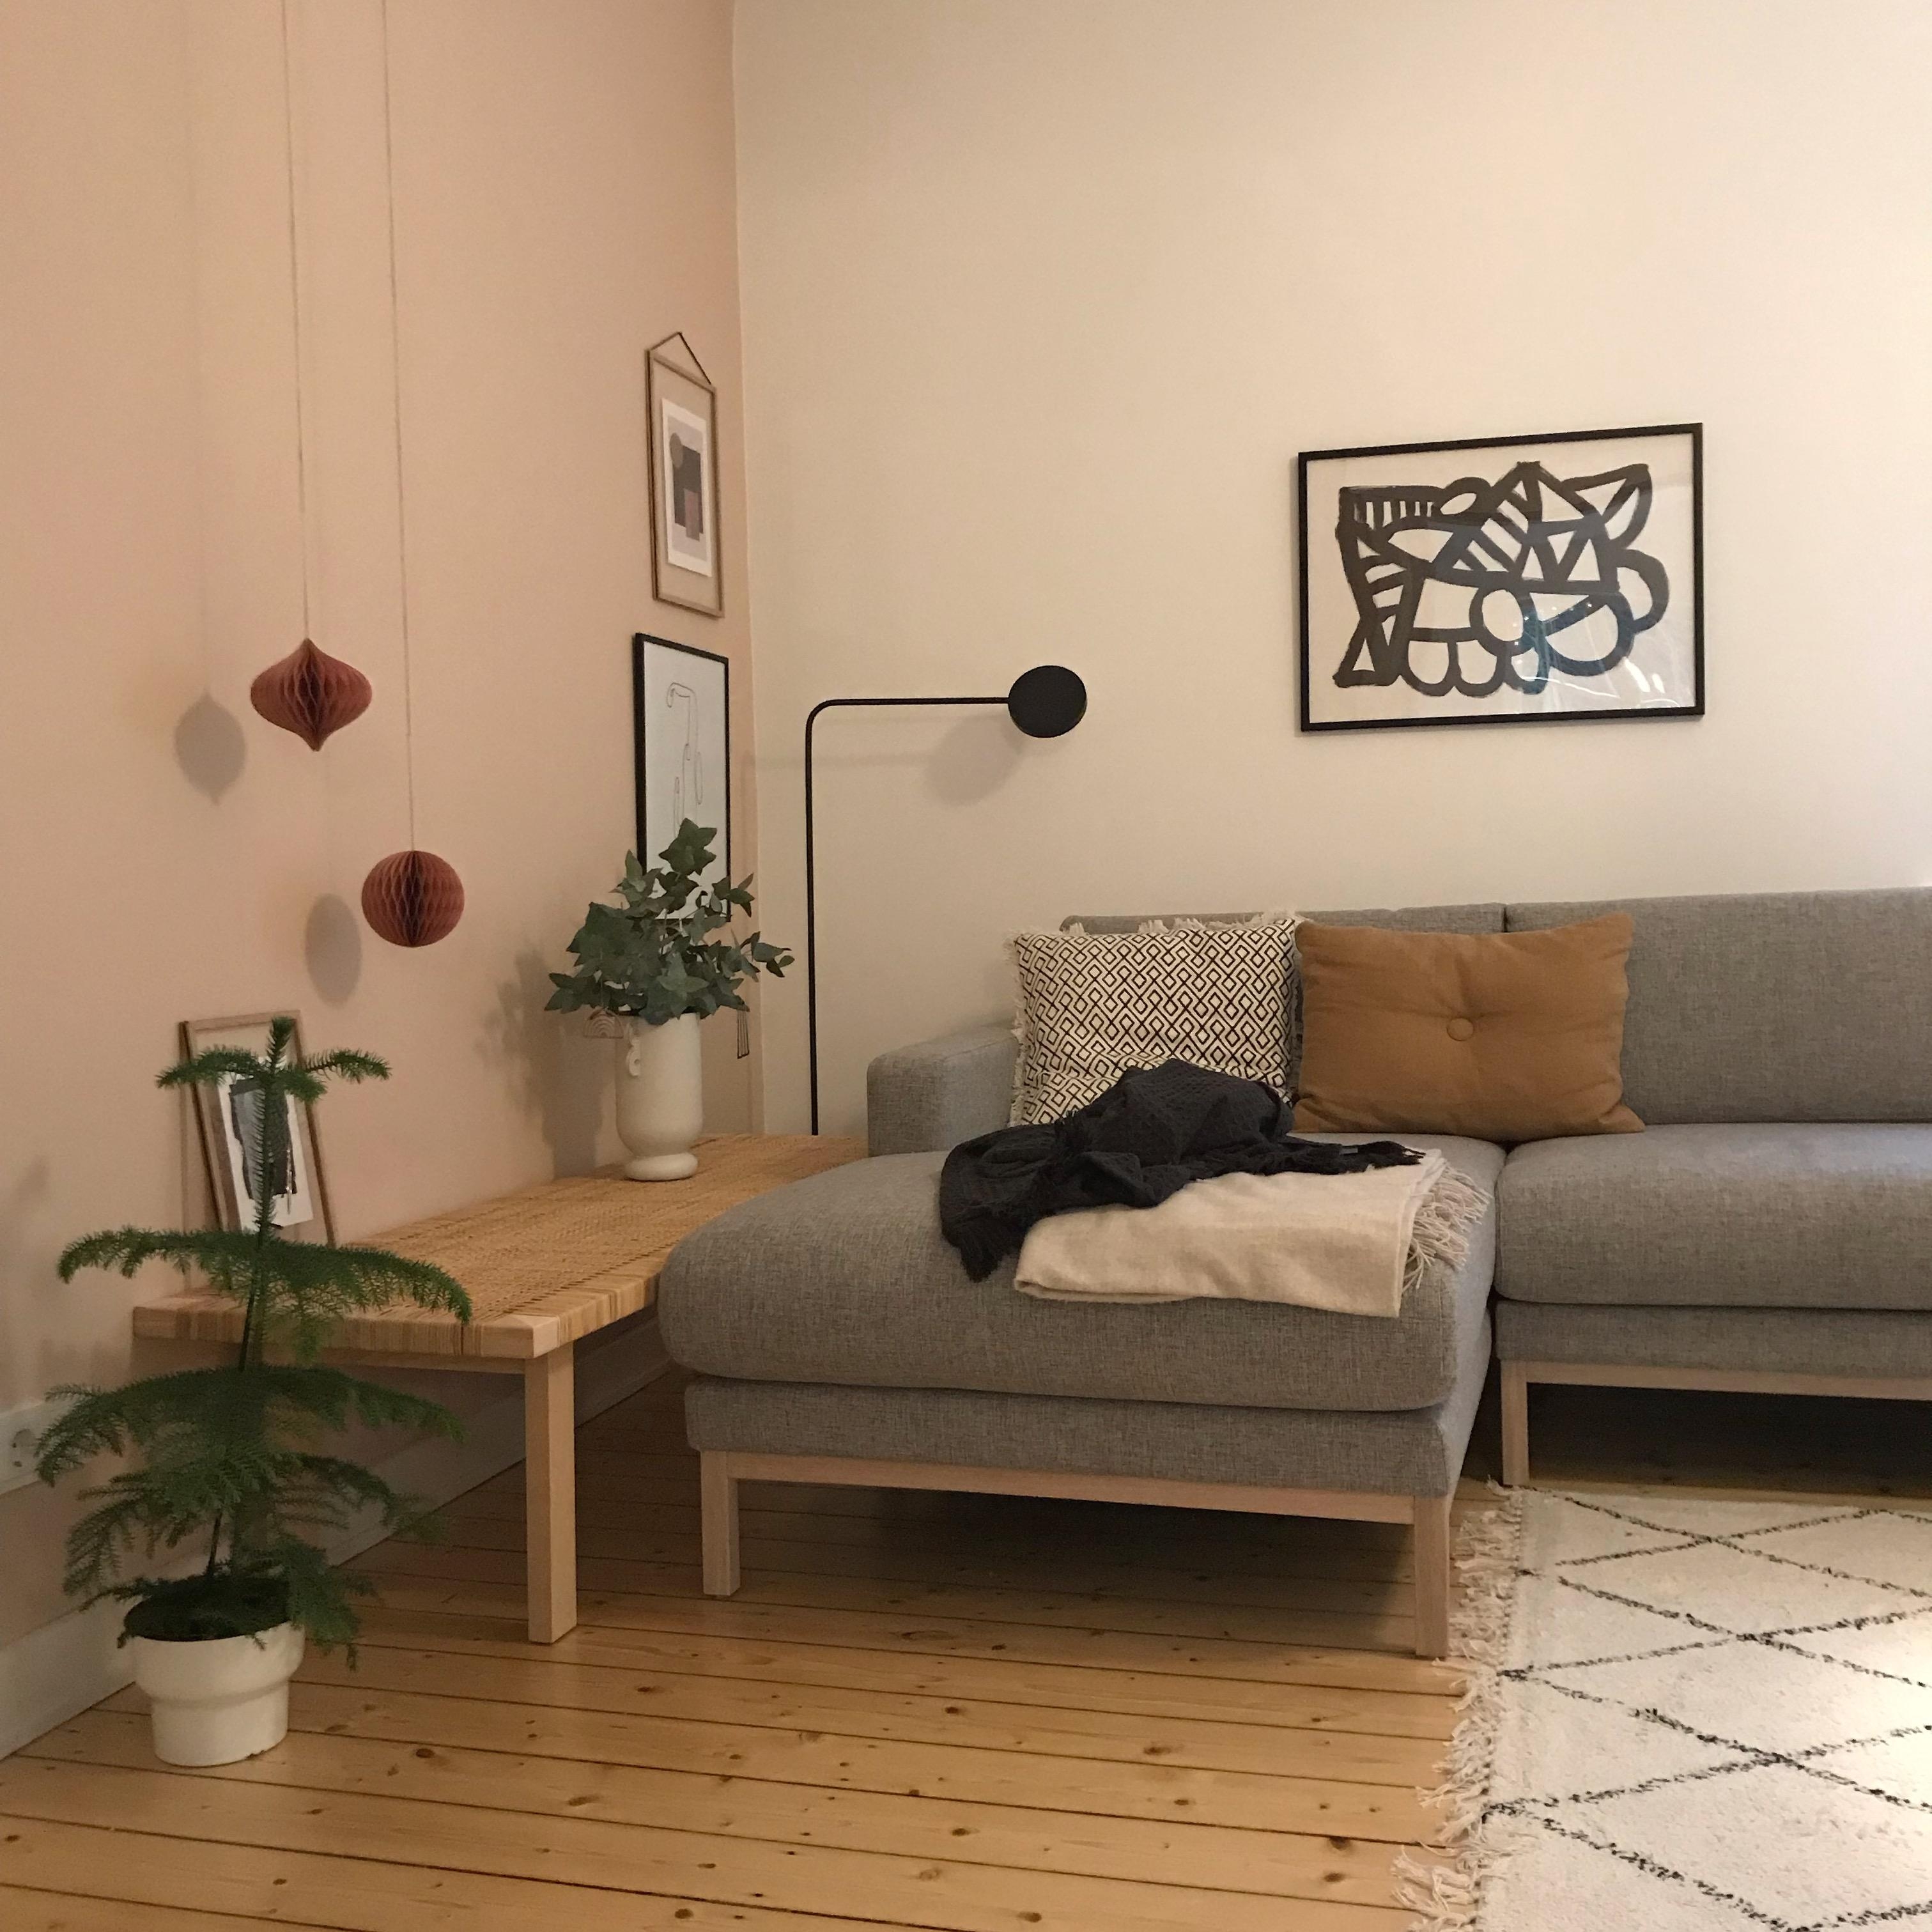 Ein neues #bild in meiner #lieblingsecke im #wohnzimmer. #cozyhome #scandi #livingroom